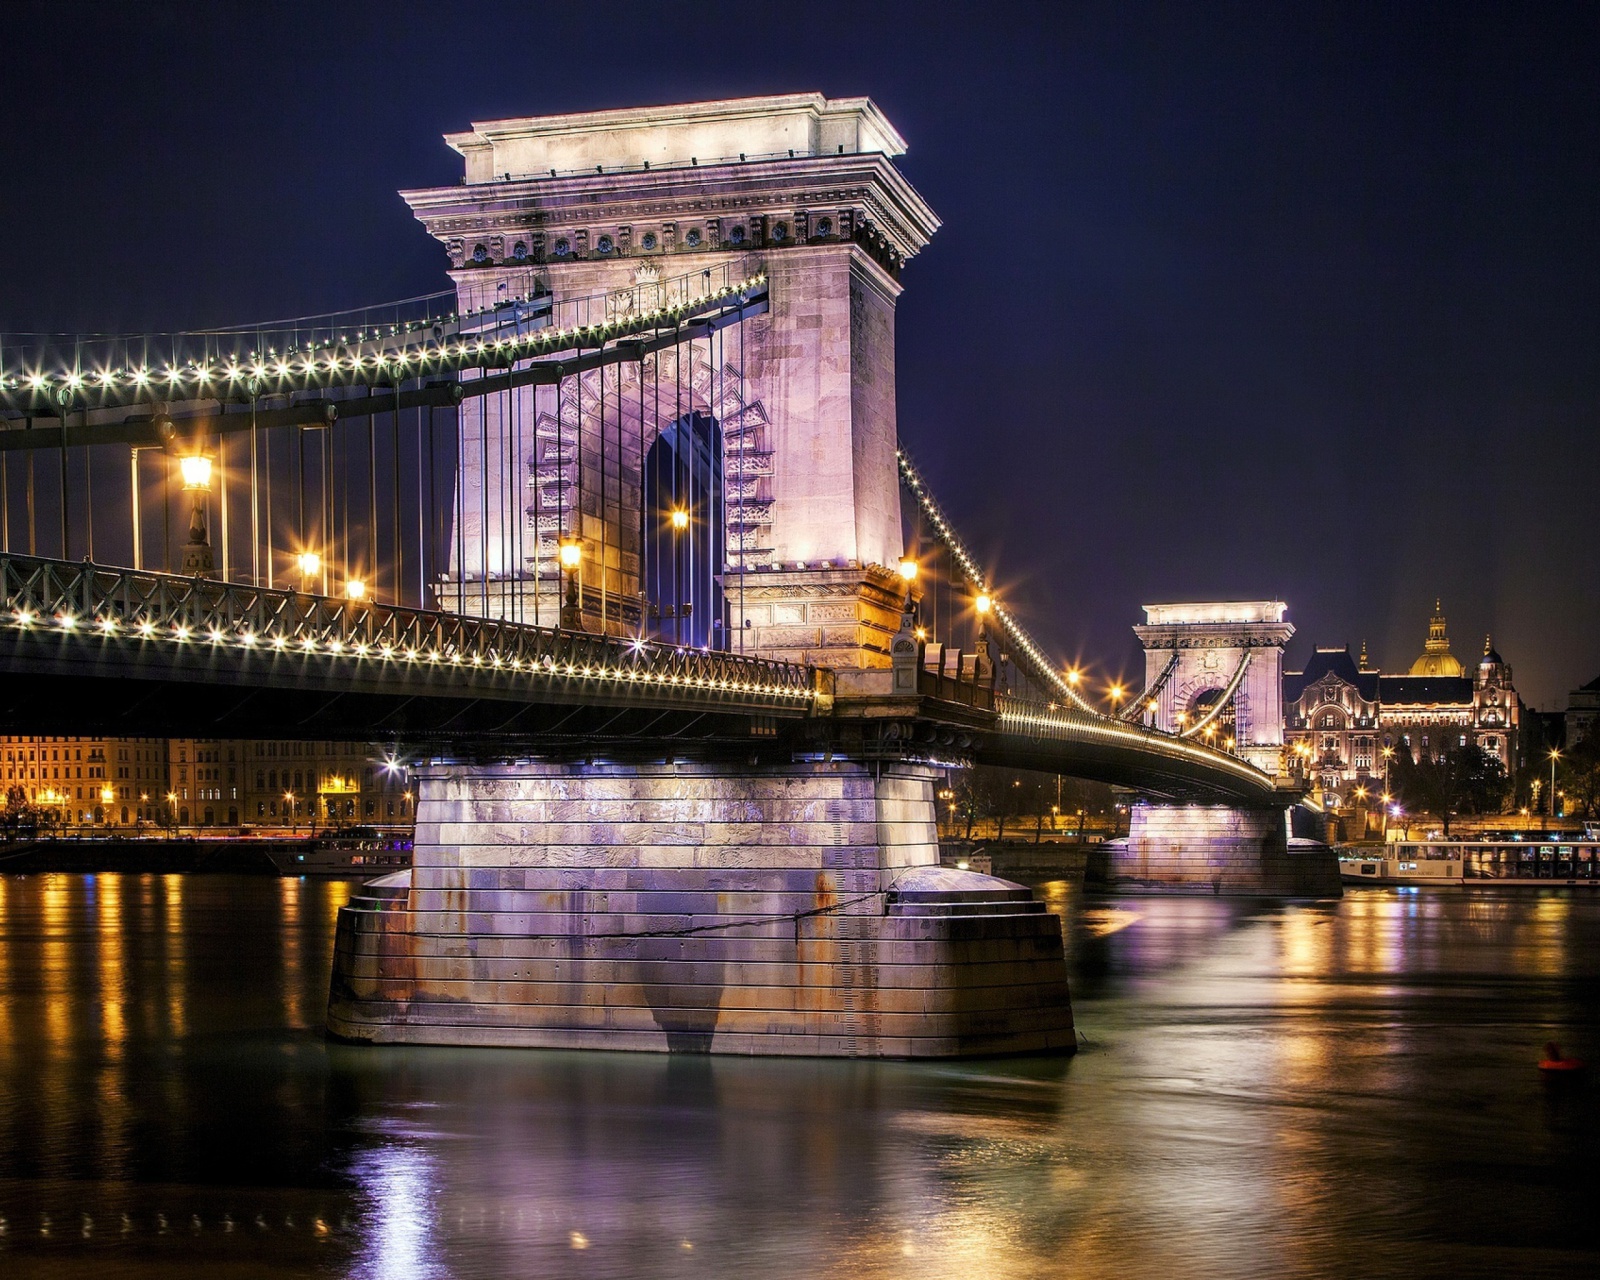 Das Chain Bridge in Budapest on Danube Wallpaper 1600x1280